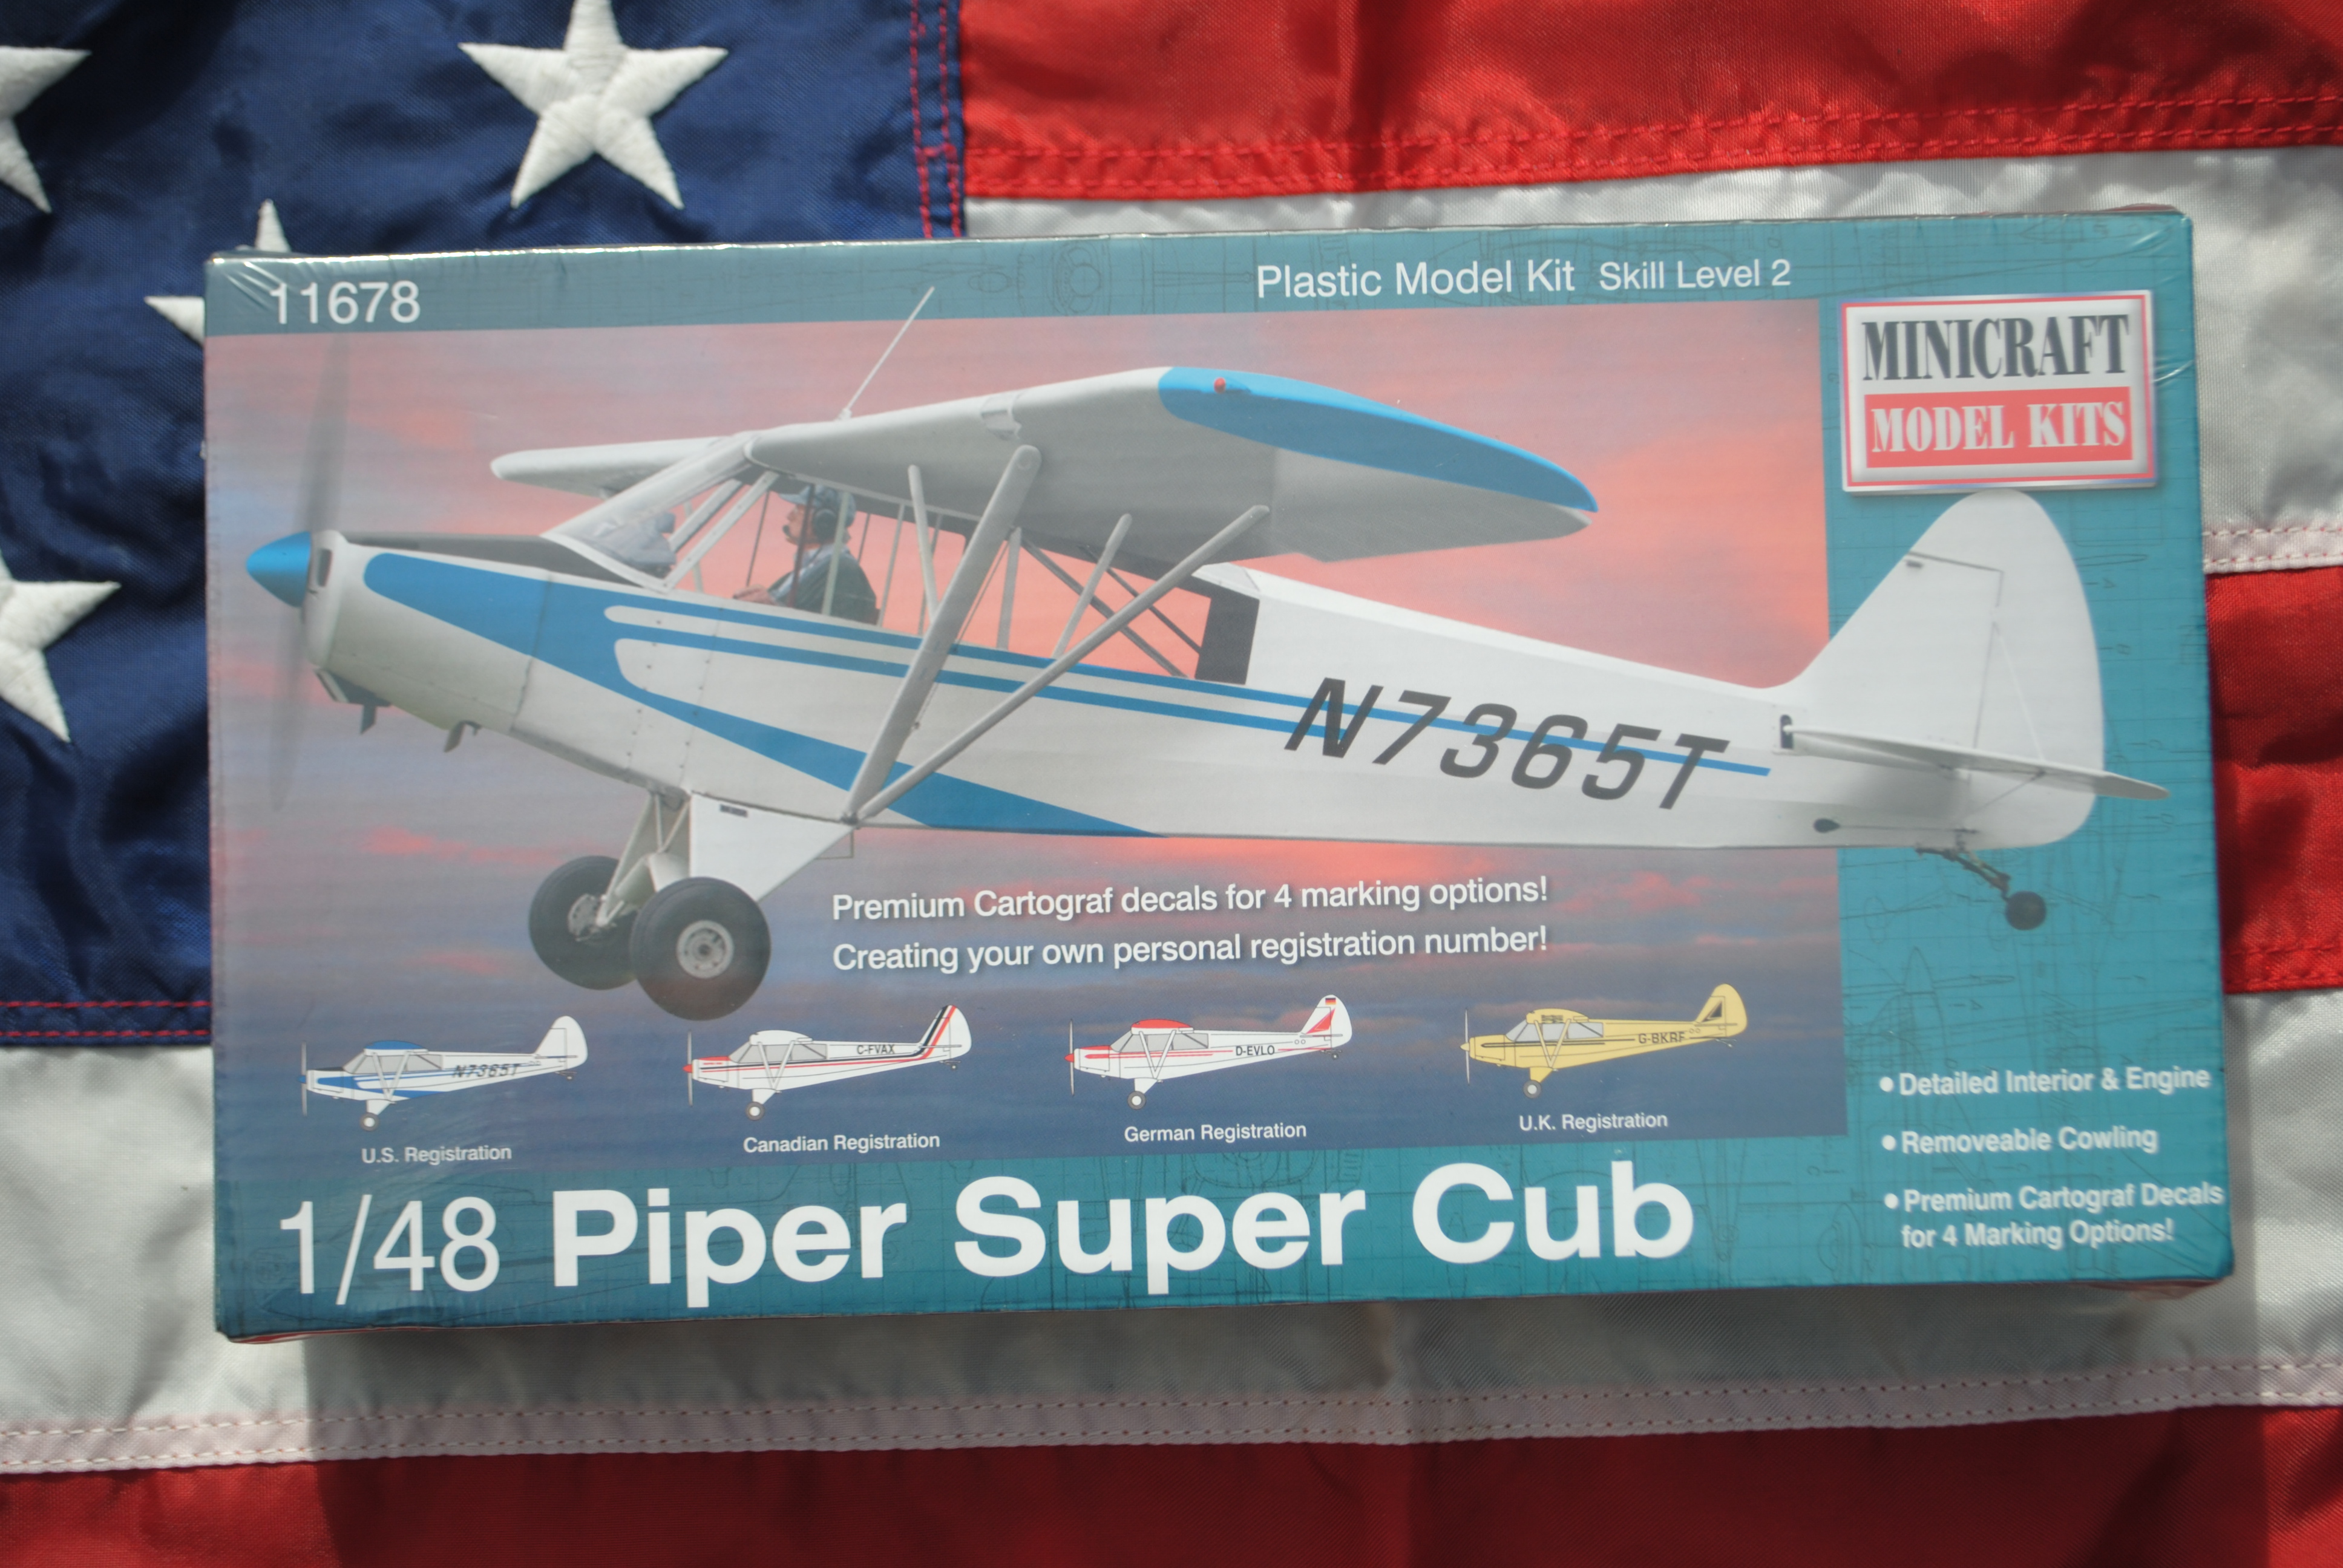 Minicraft Model Kits 11678 Piper Super Cub